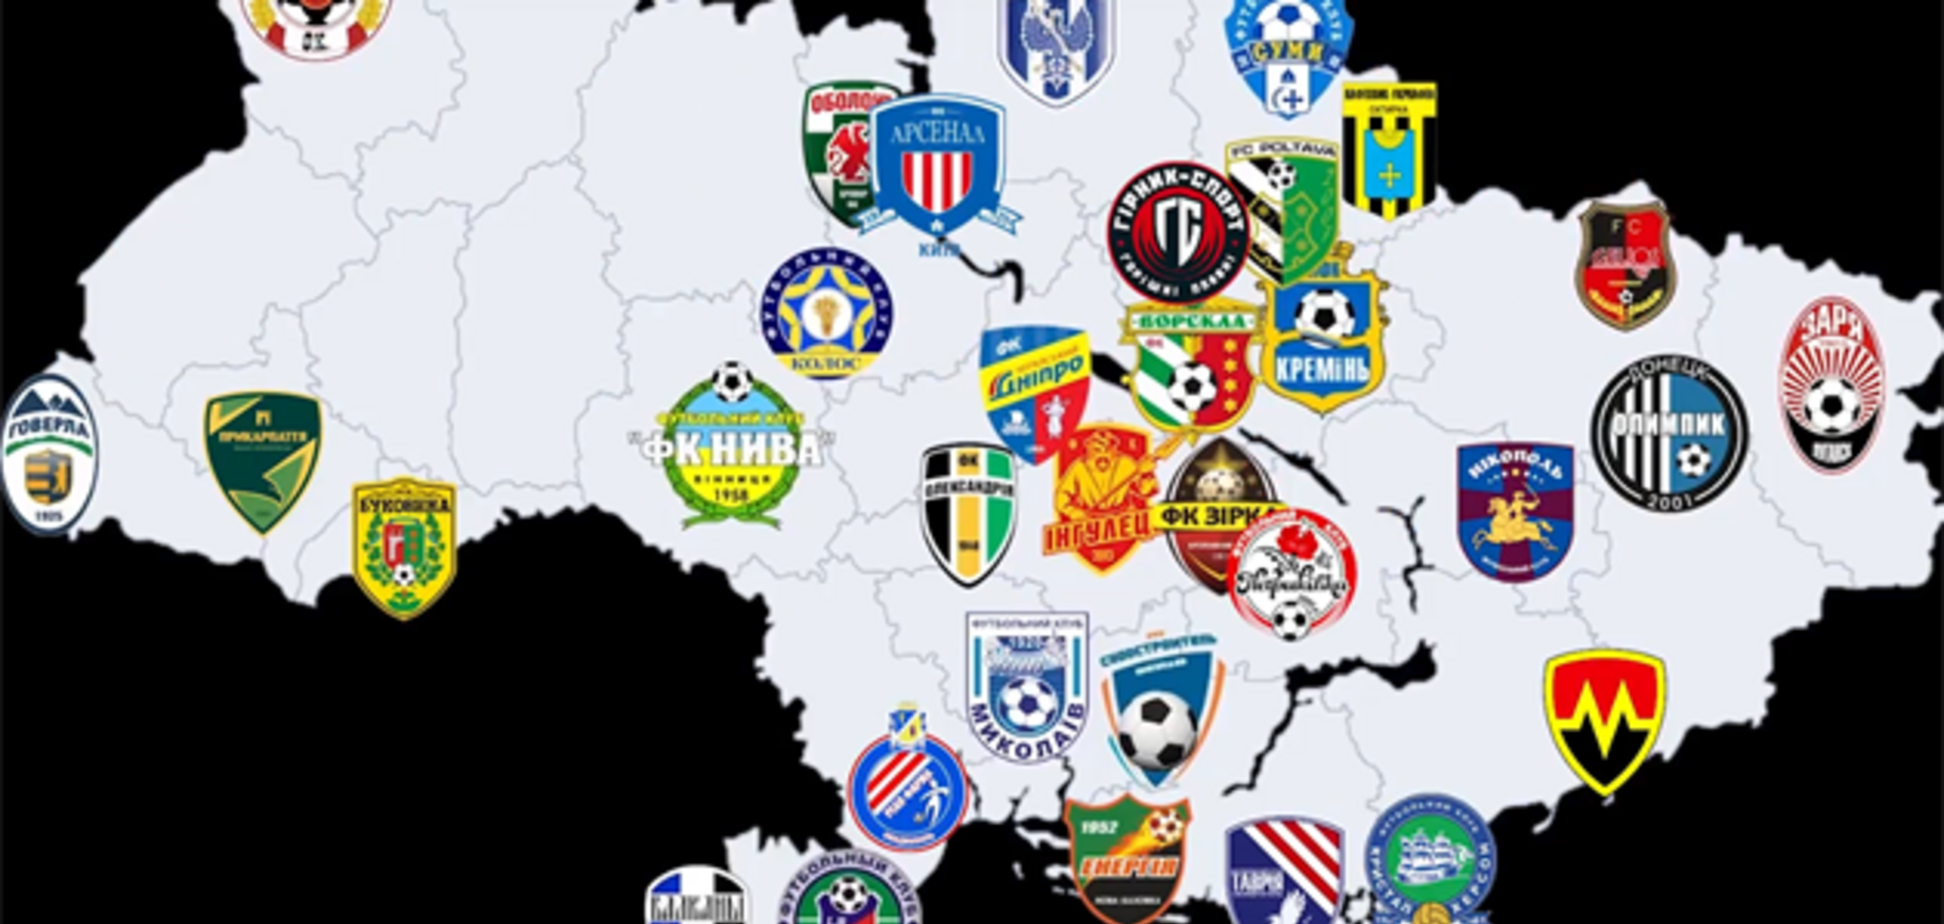 МВД назвало все клубы Украины, участвовавшие в договорных матчах